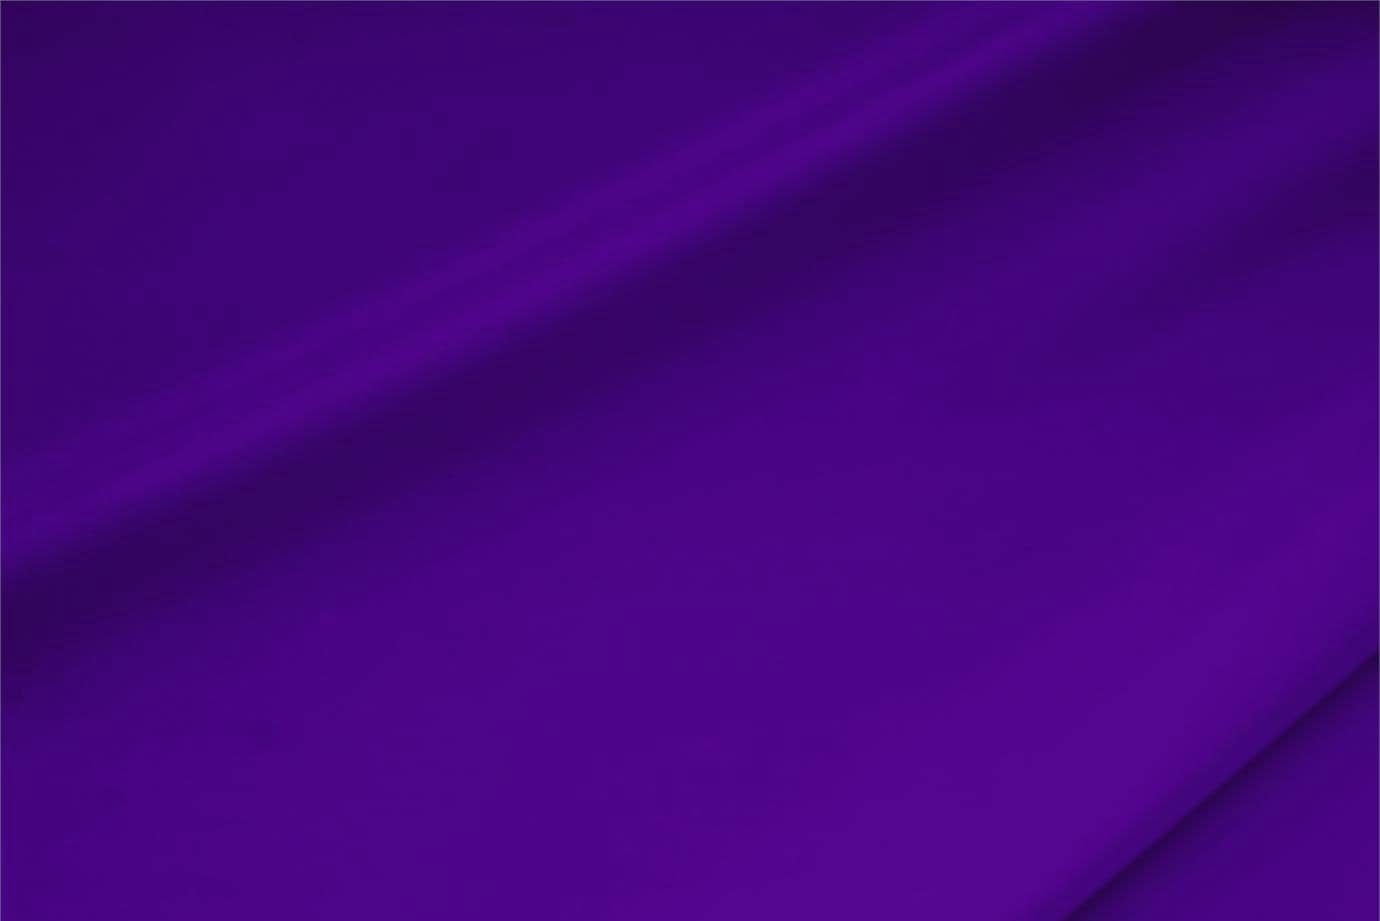 Tissu Crêpe de Chine Stretch Violet violette en Soie, Stretch pour vêtements